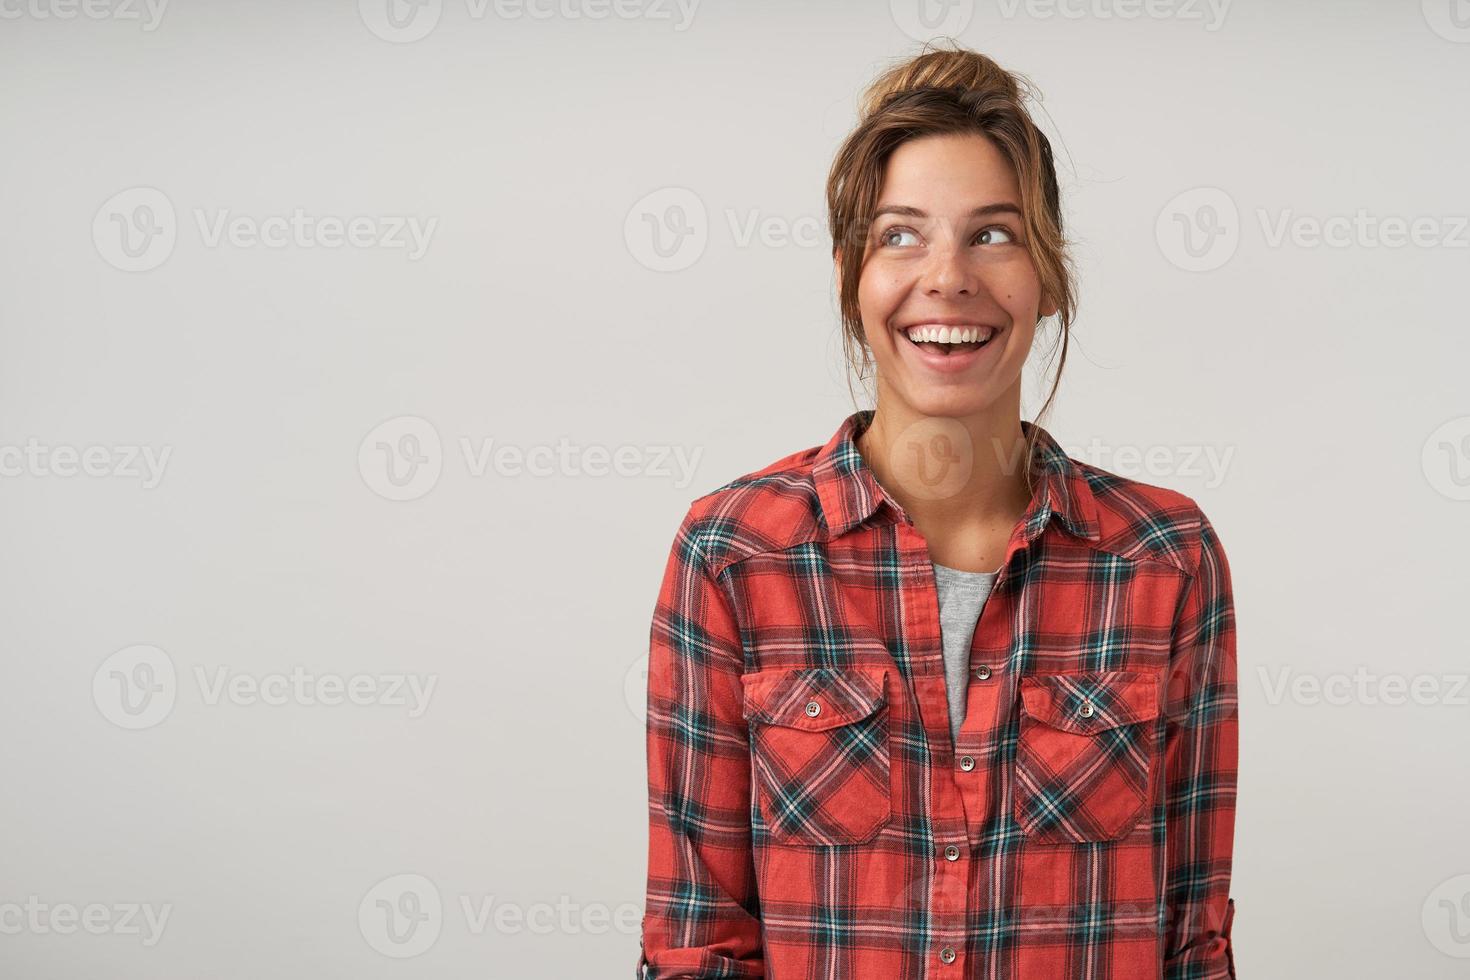 mulher jovem feliz com penteado casual posando sobre fundo branco na camisa quadriculada, olhando de lado alegremente com amplo sorriso sincero foto